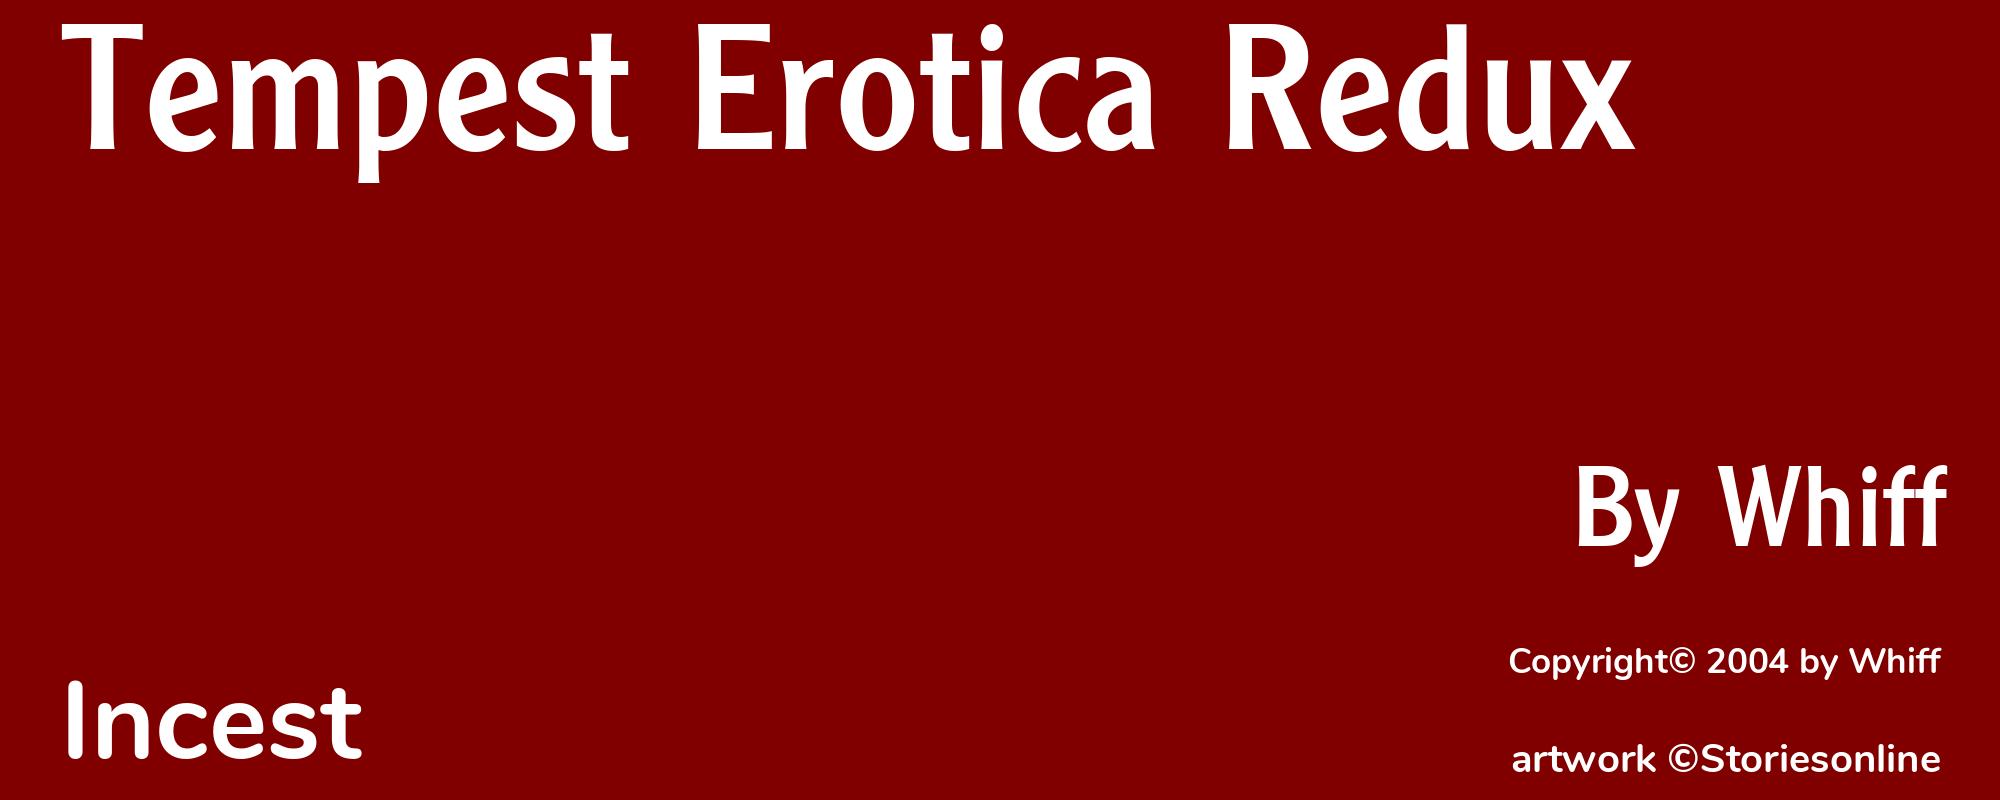 Tempest Erotica Redux - Cover